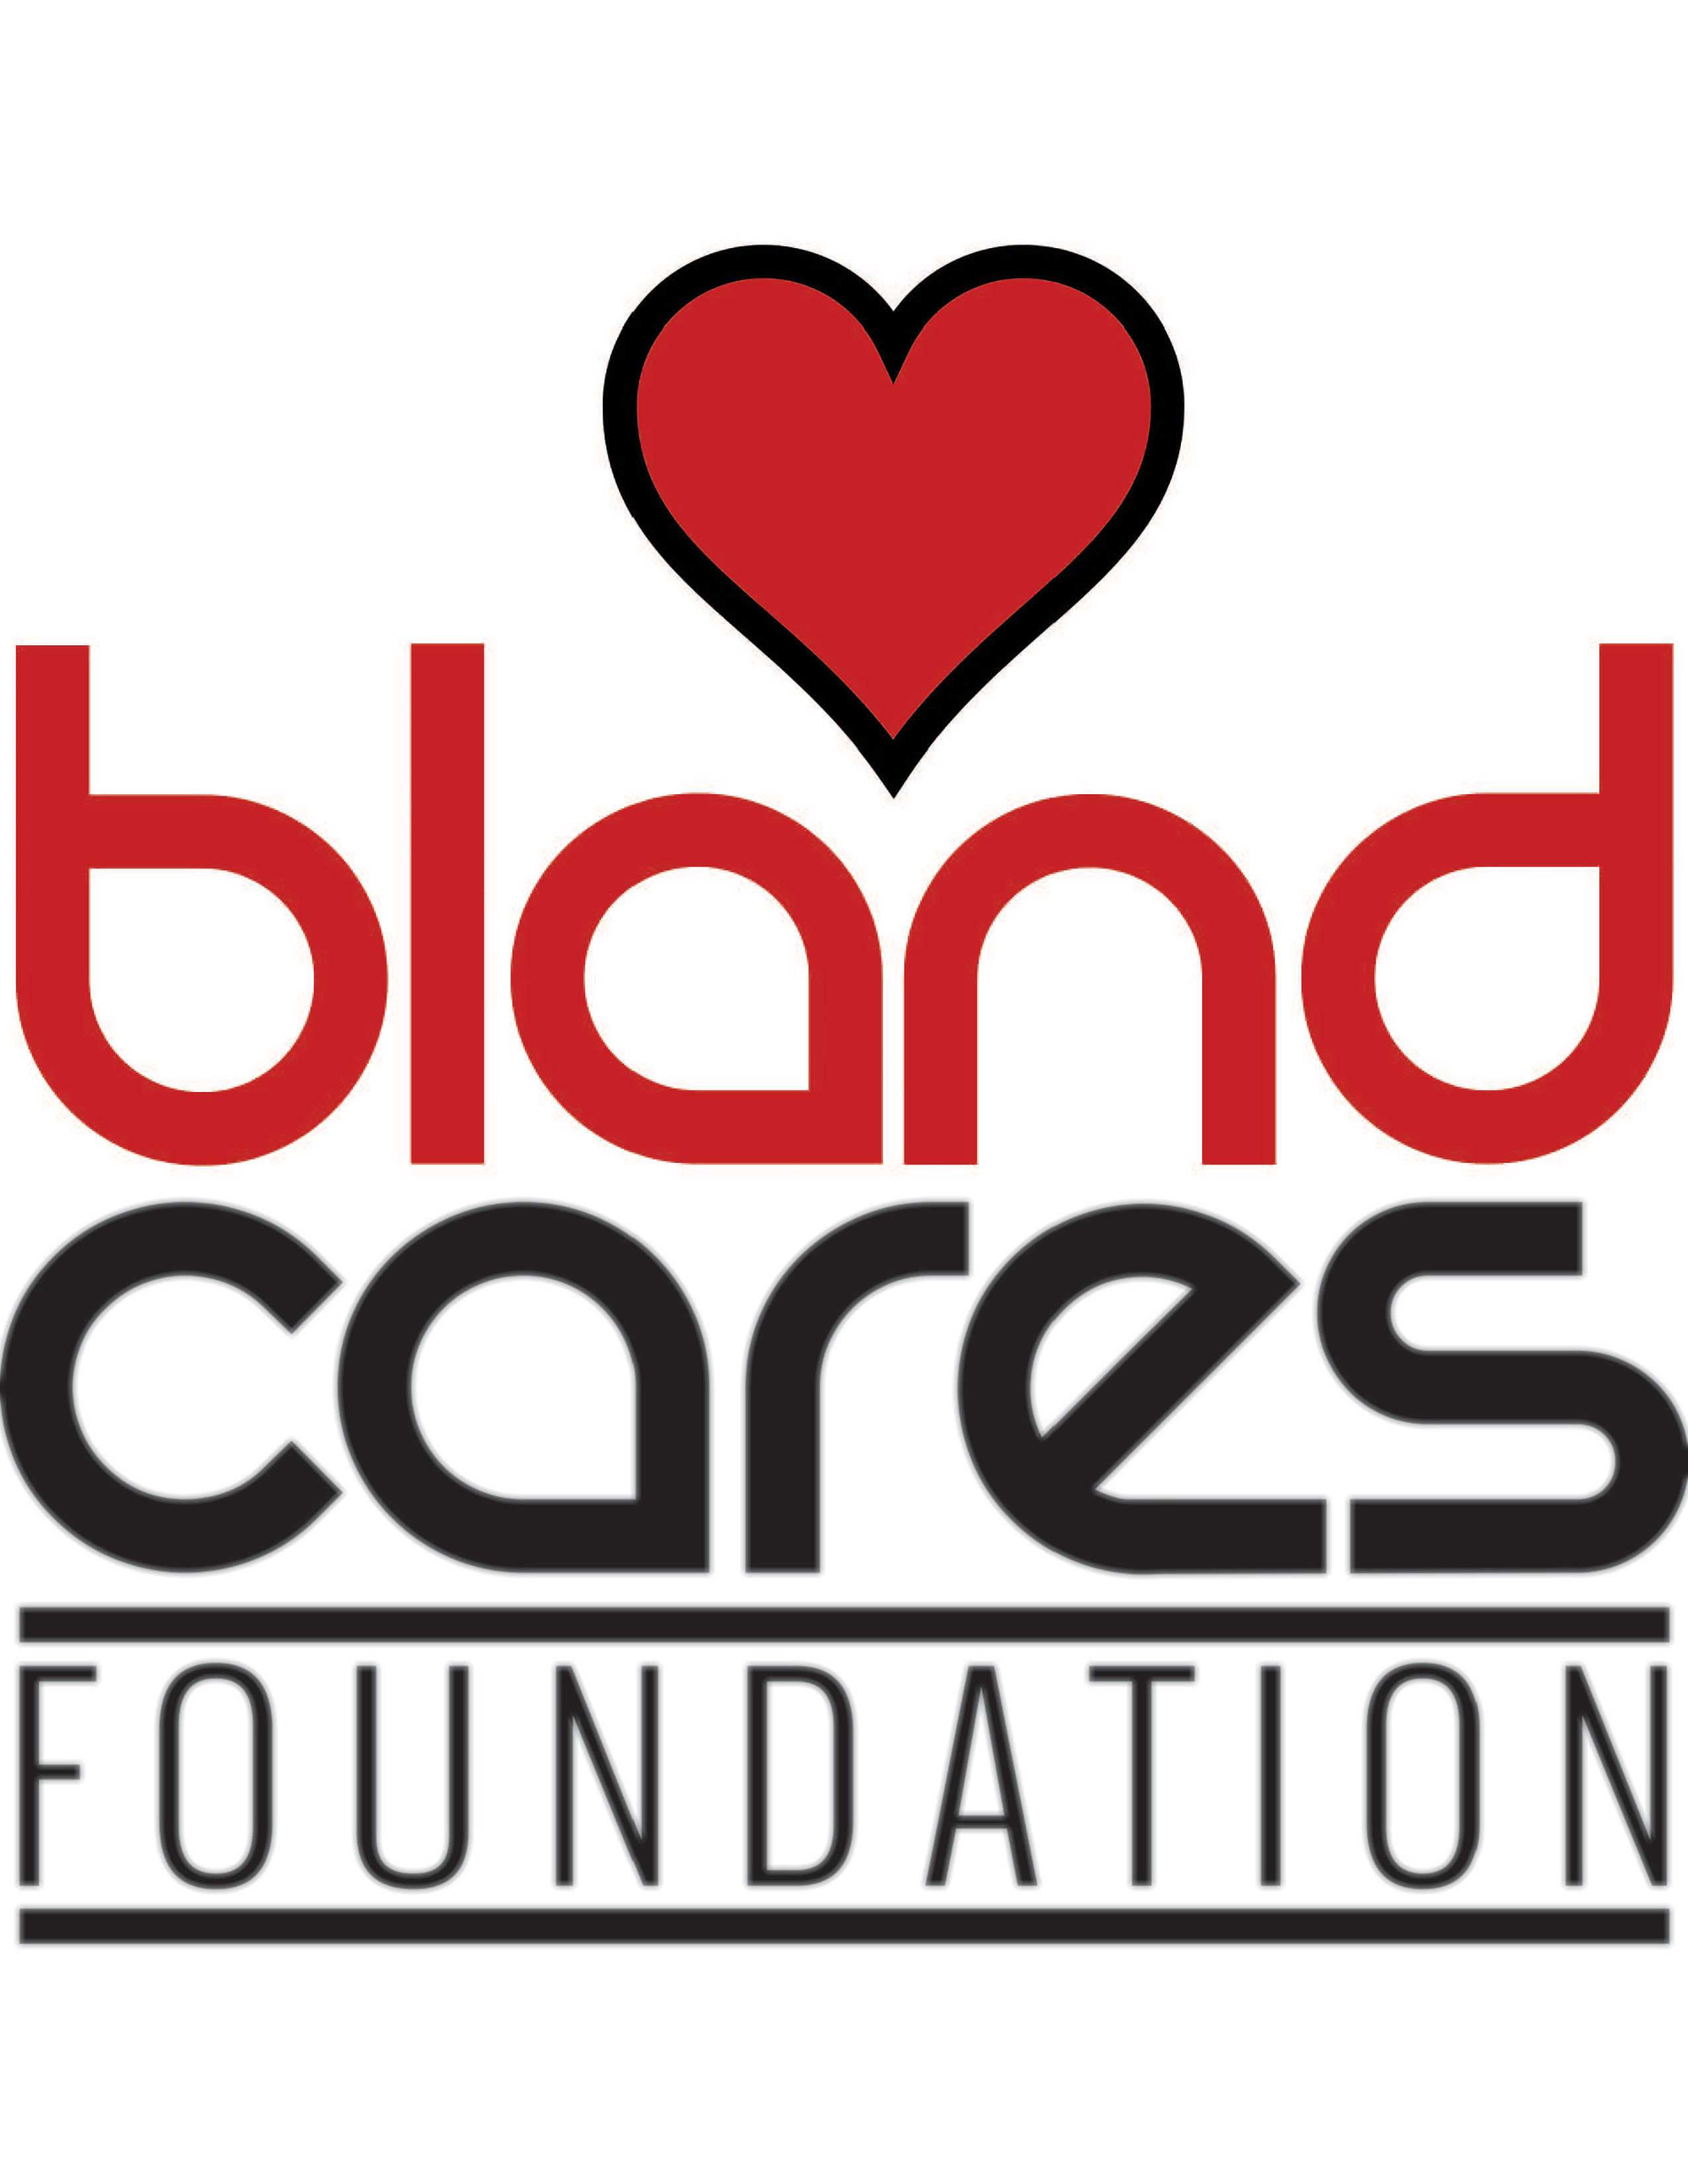 Bland Cares Foundation